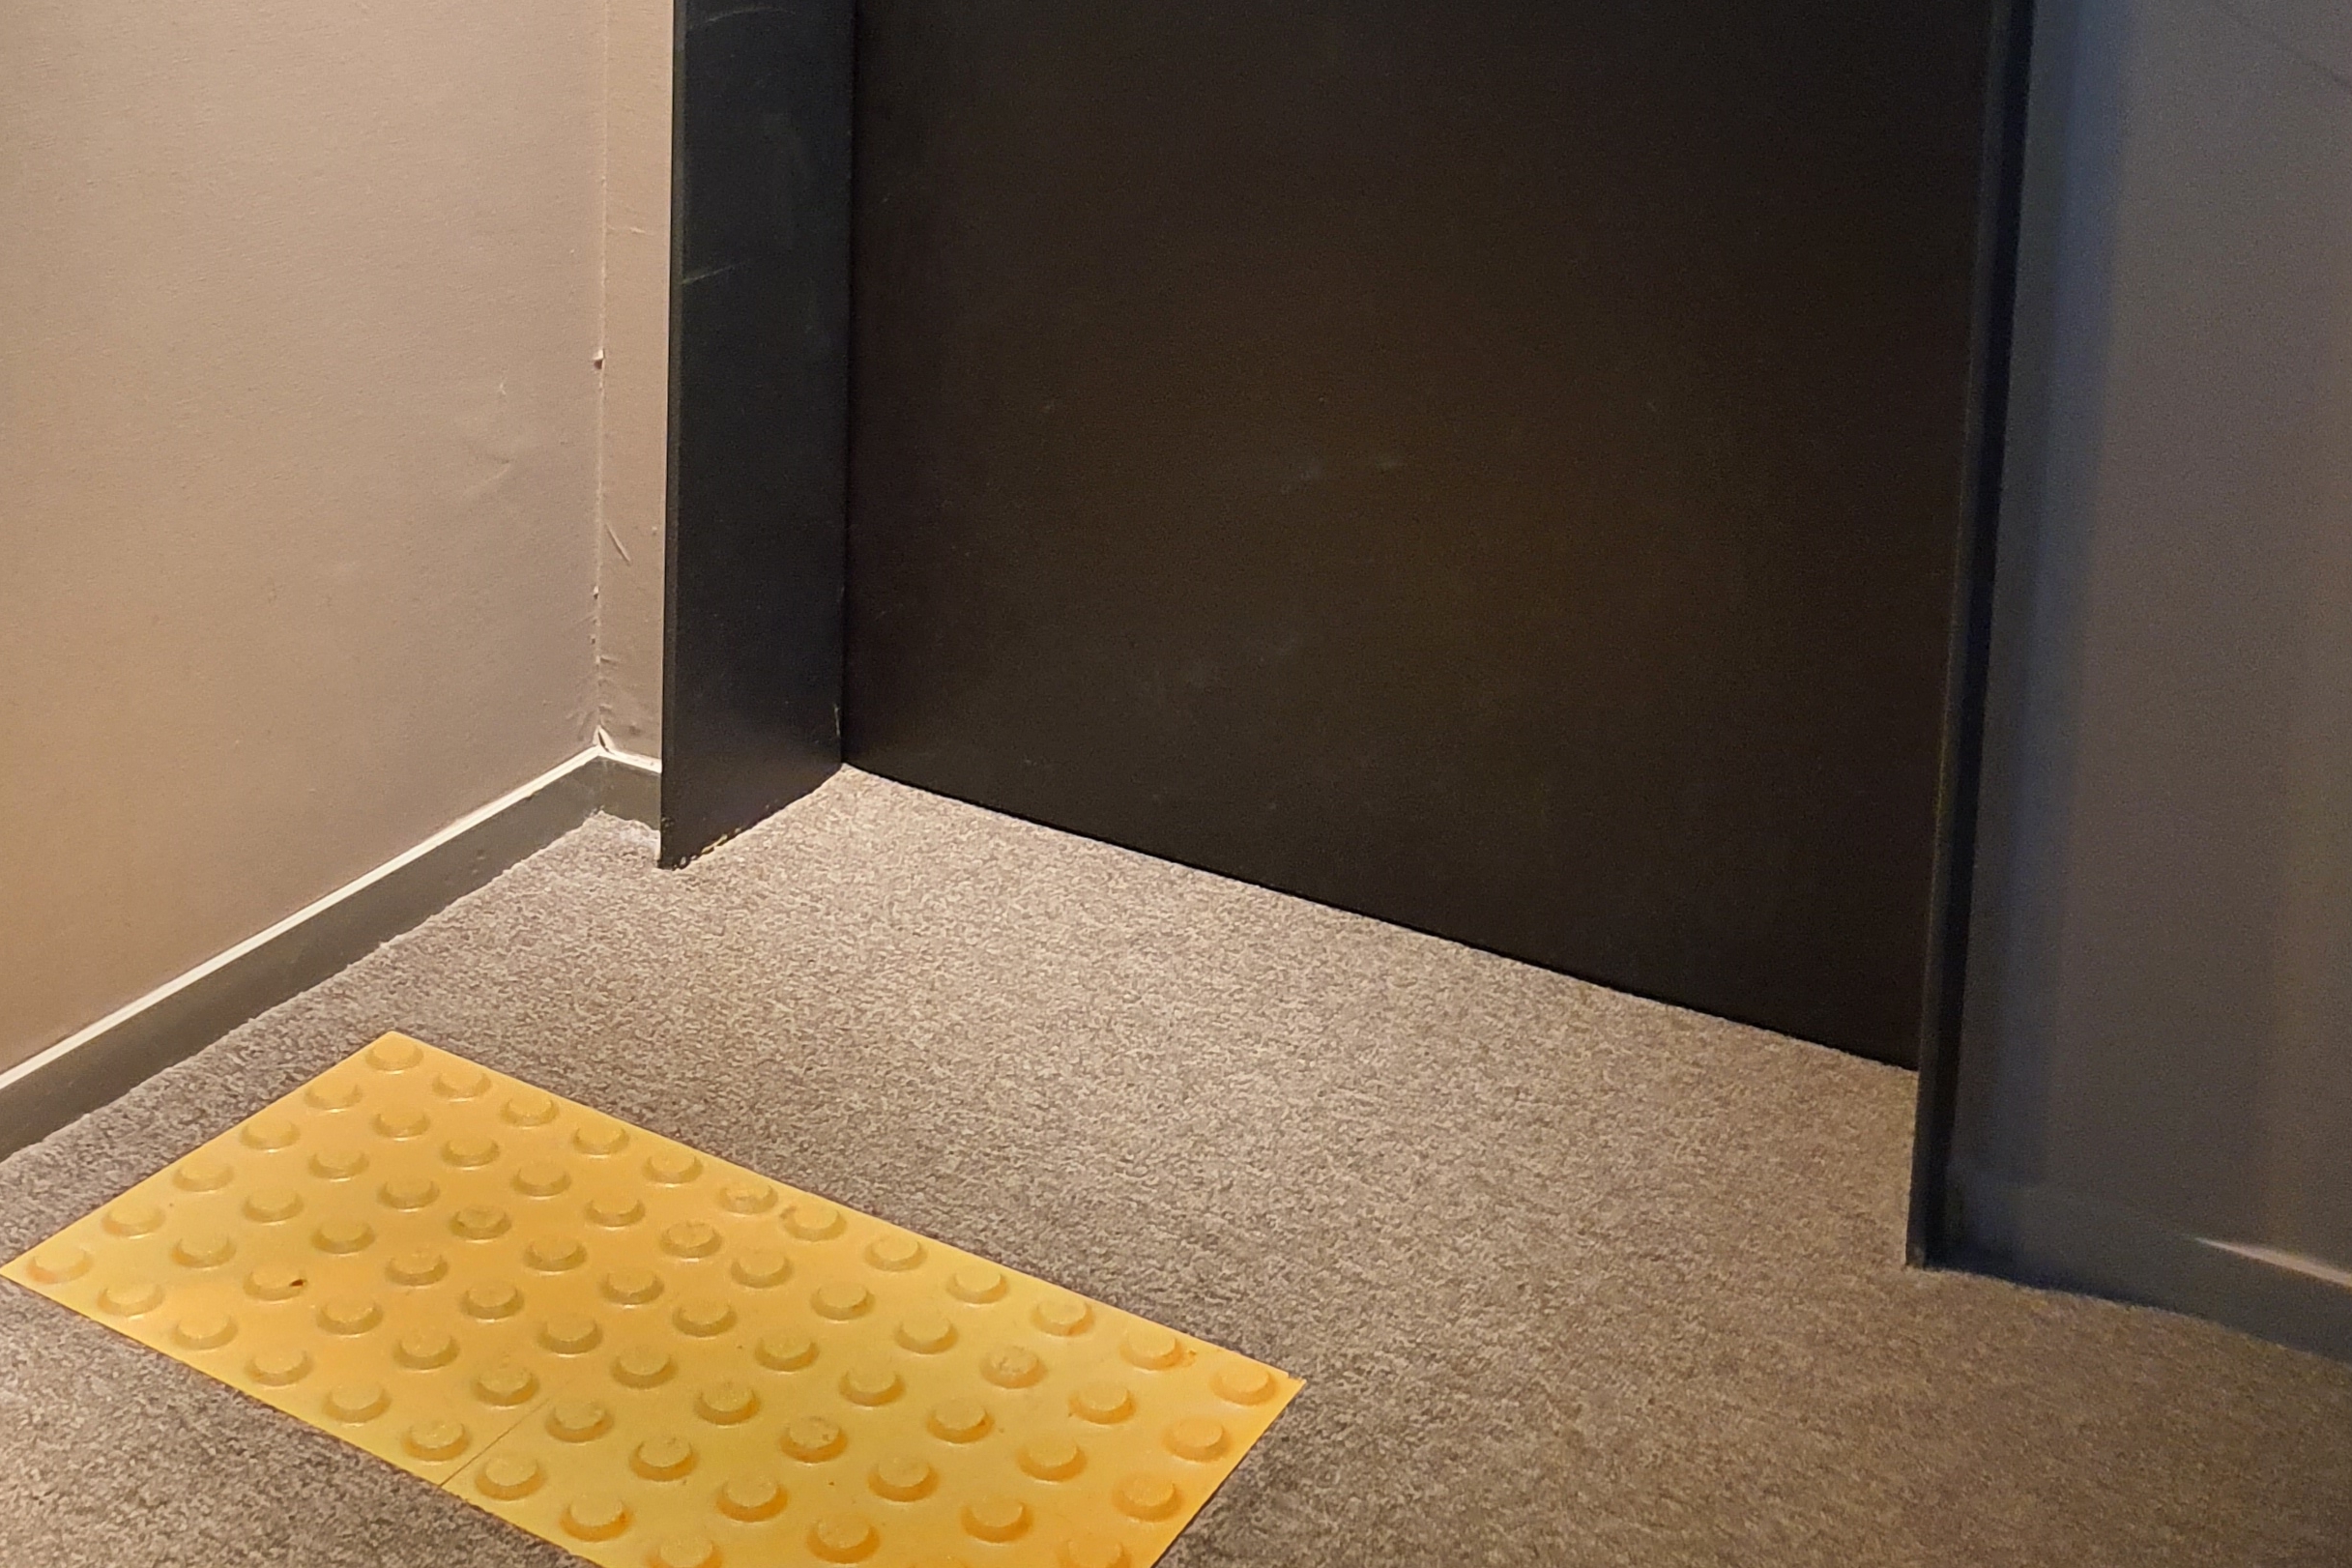 장애인 객실0 : 객실 출입구 앞에 설치된 점형 블록